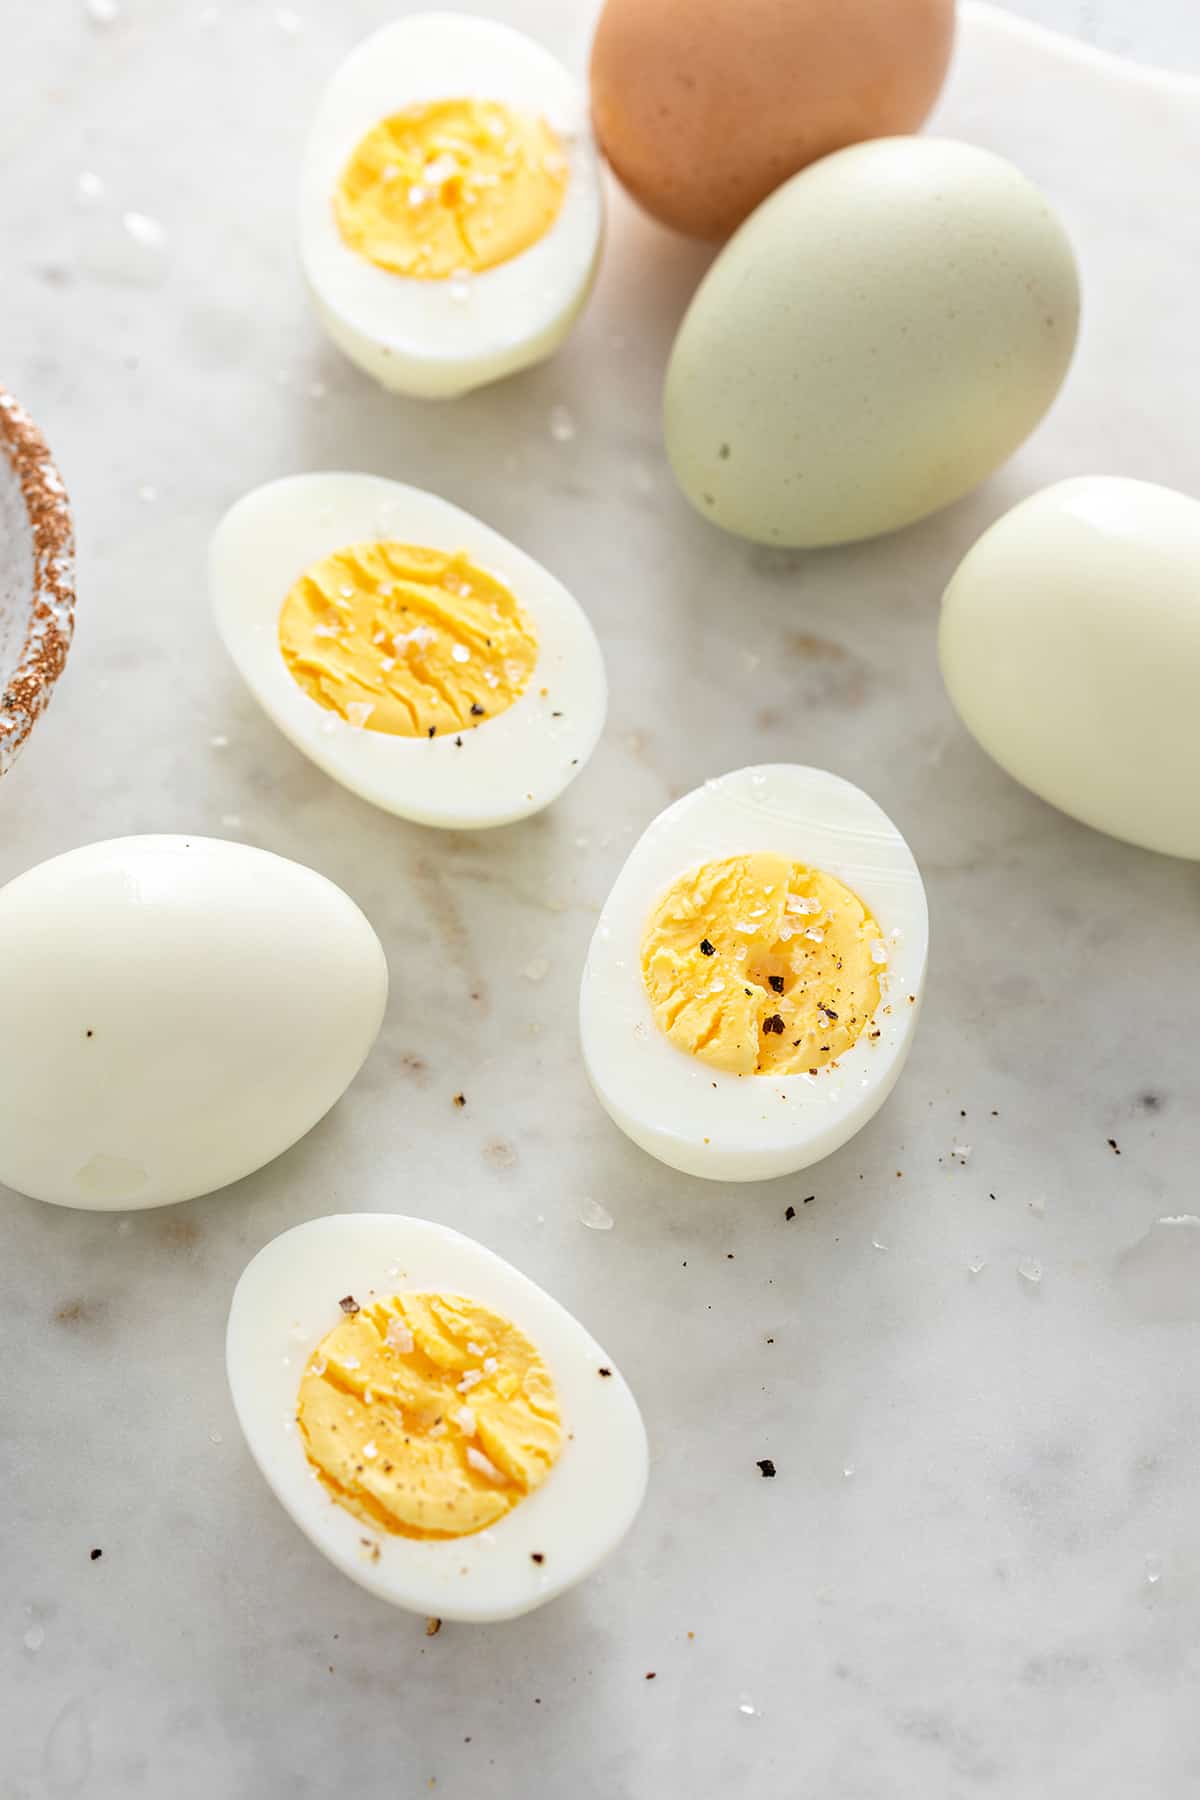 https://www.mybakingaddiction.com/wp-content/uploads/2022/03/close-up-halved-hard-boiled-eggs.jpg